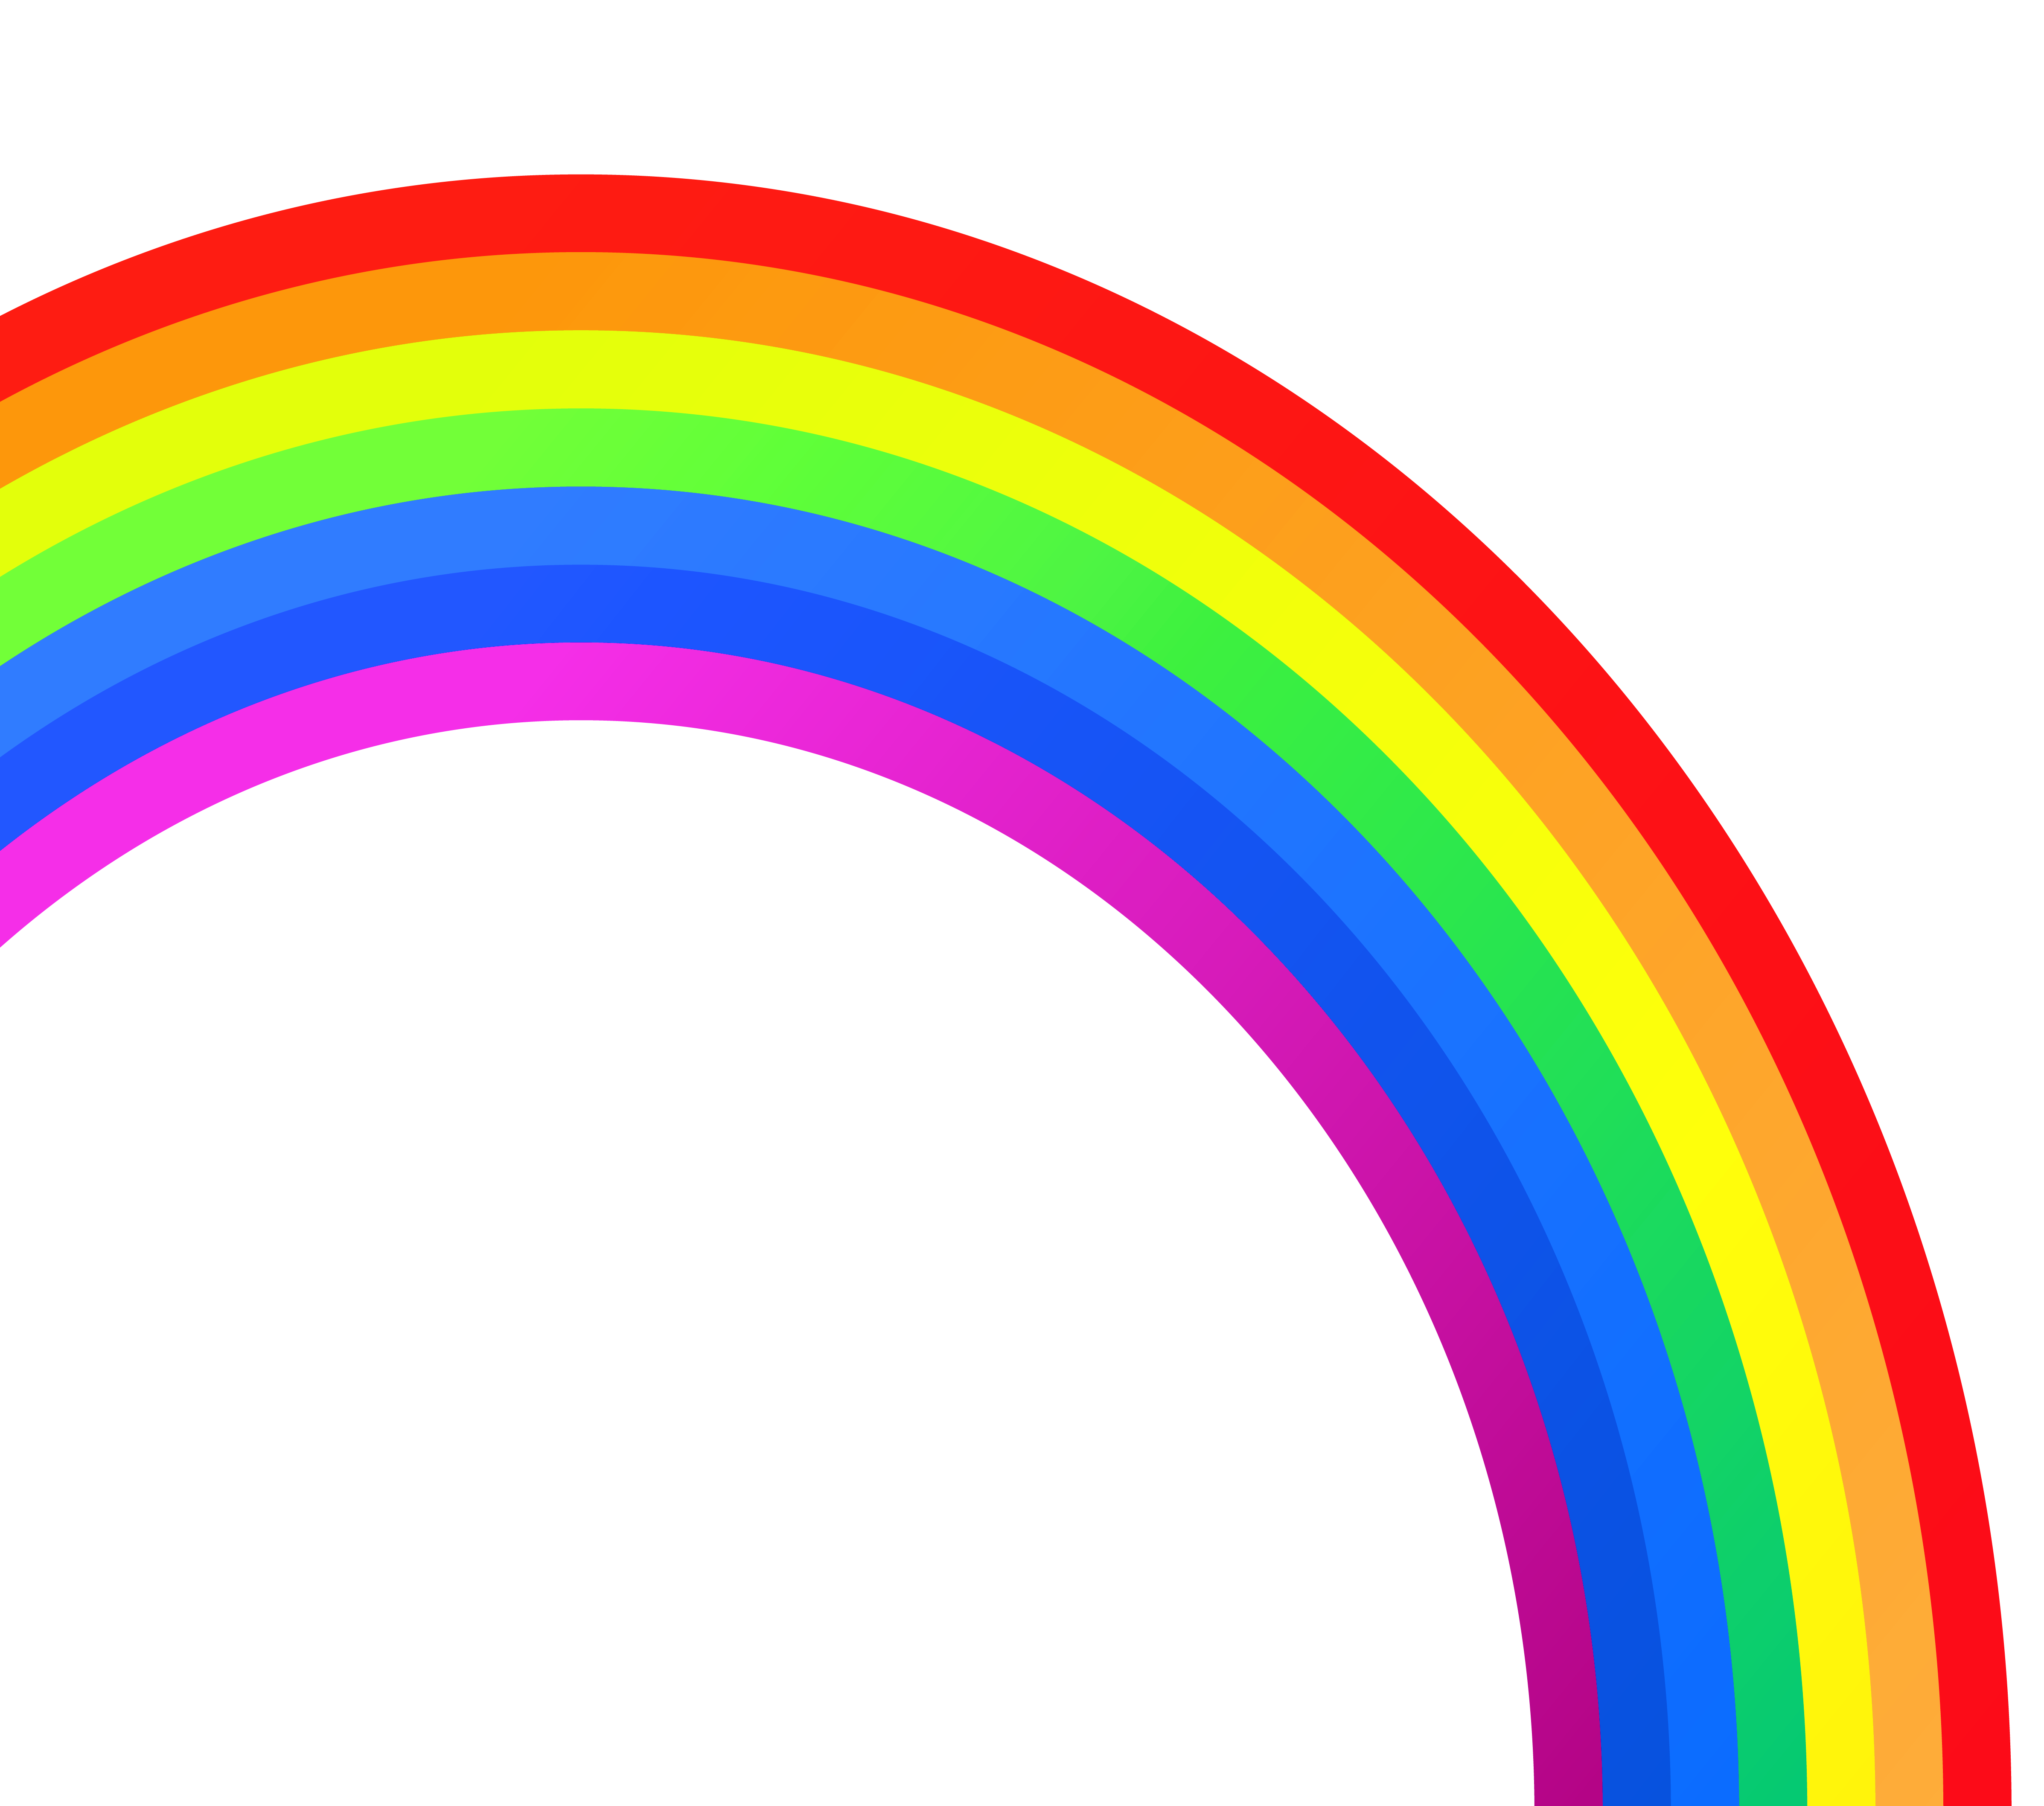 rainbow clipart - Clip Art Library